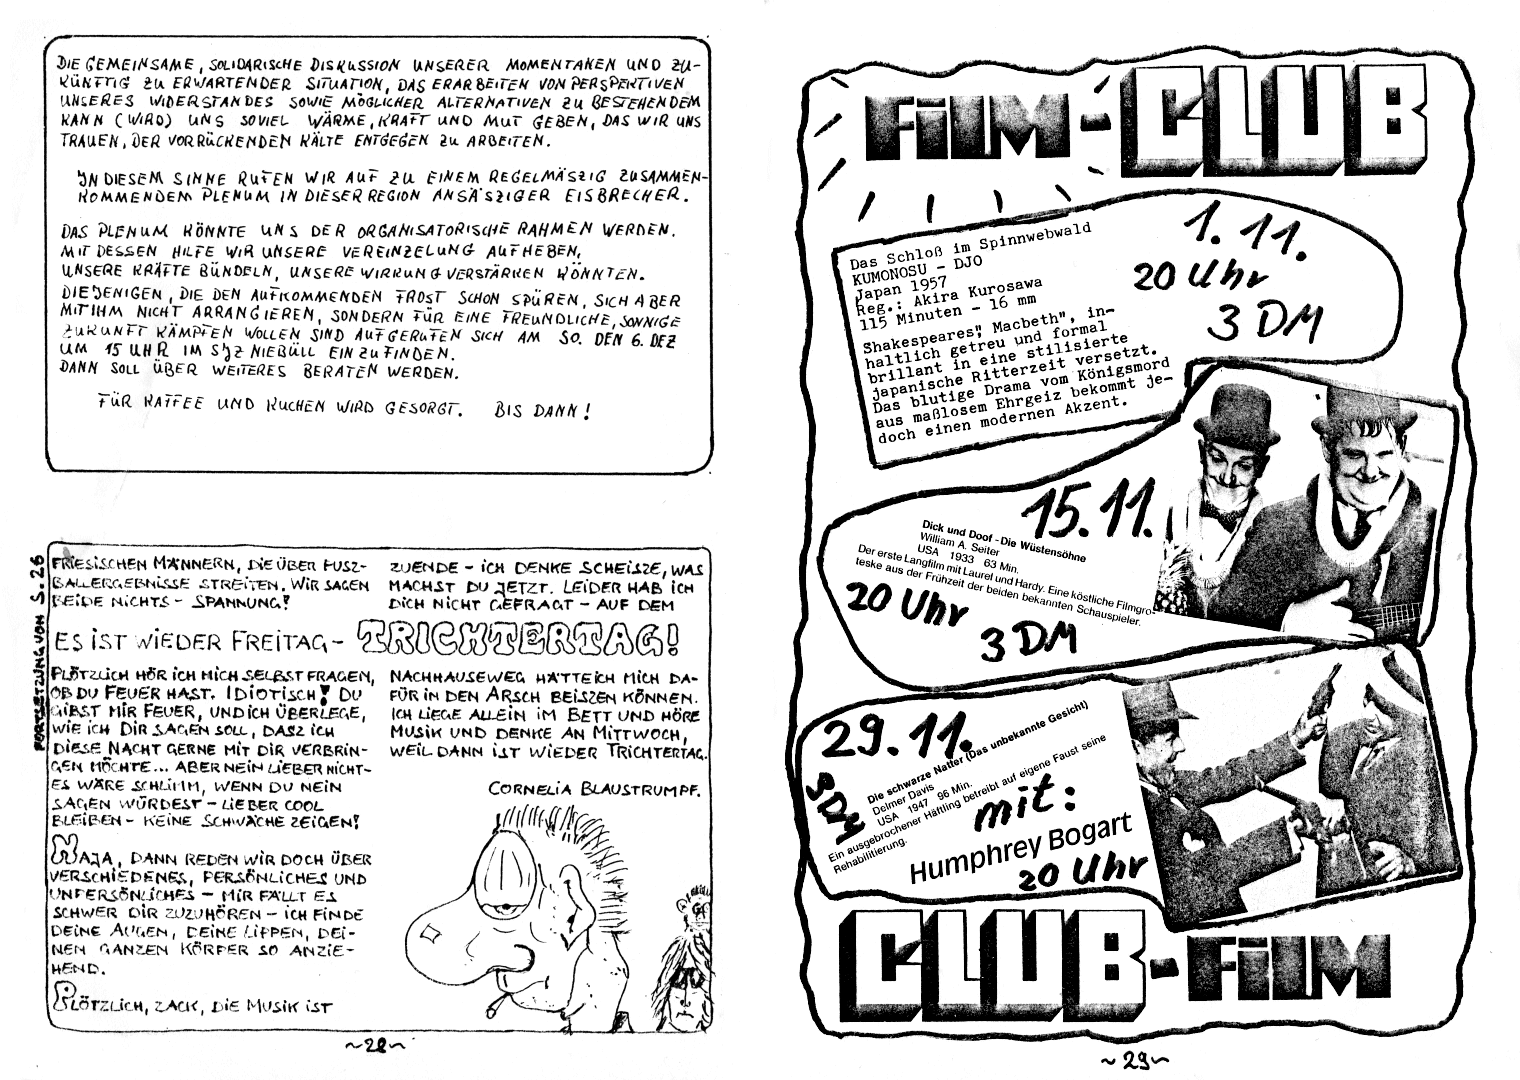 HZ 6 - Seite 28 und 29